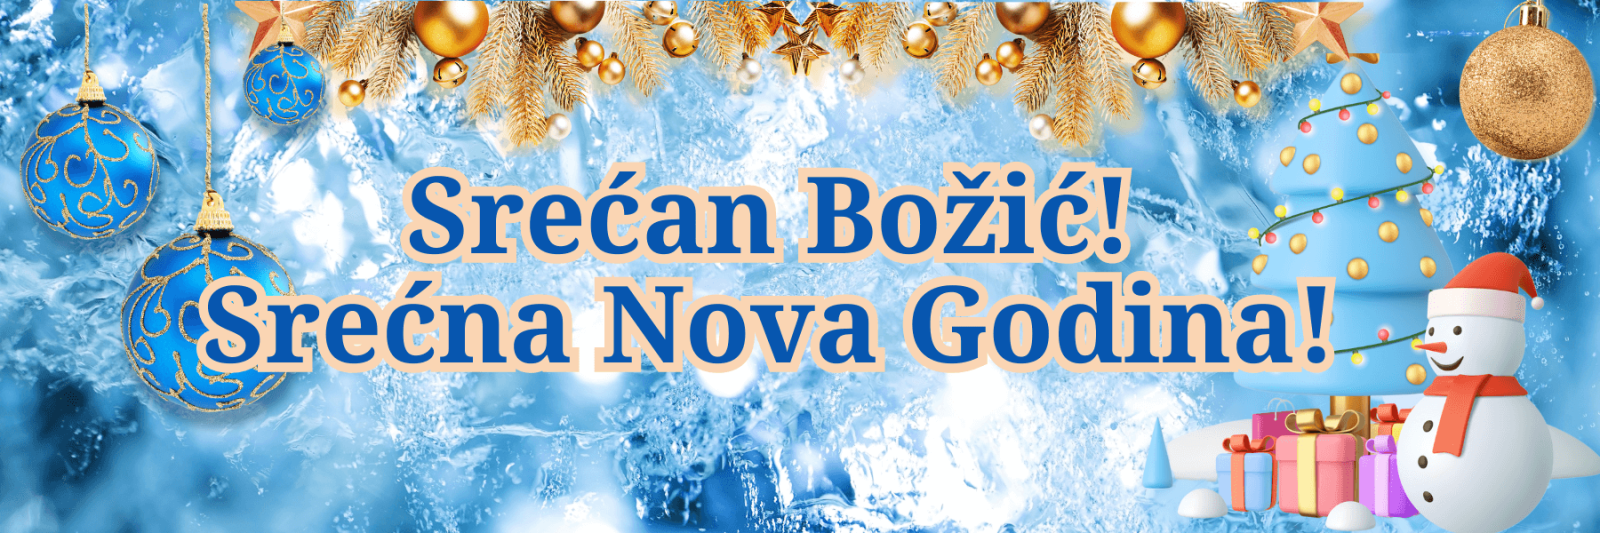 ¡Feliz navidad y próspero año nuevo! En montenegrino